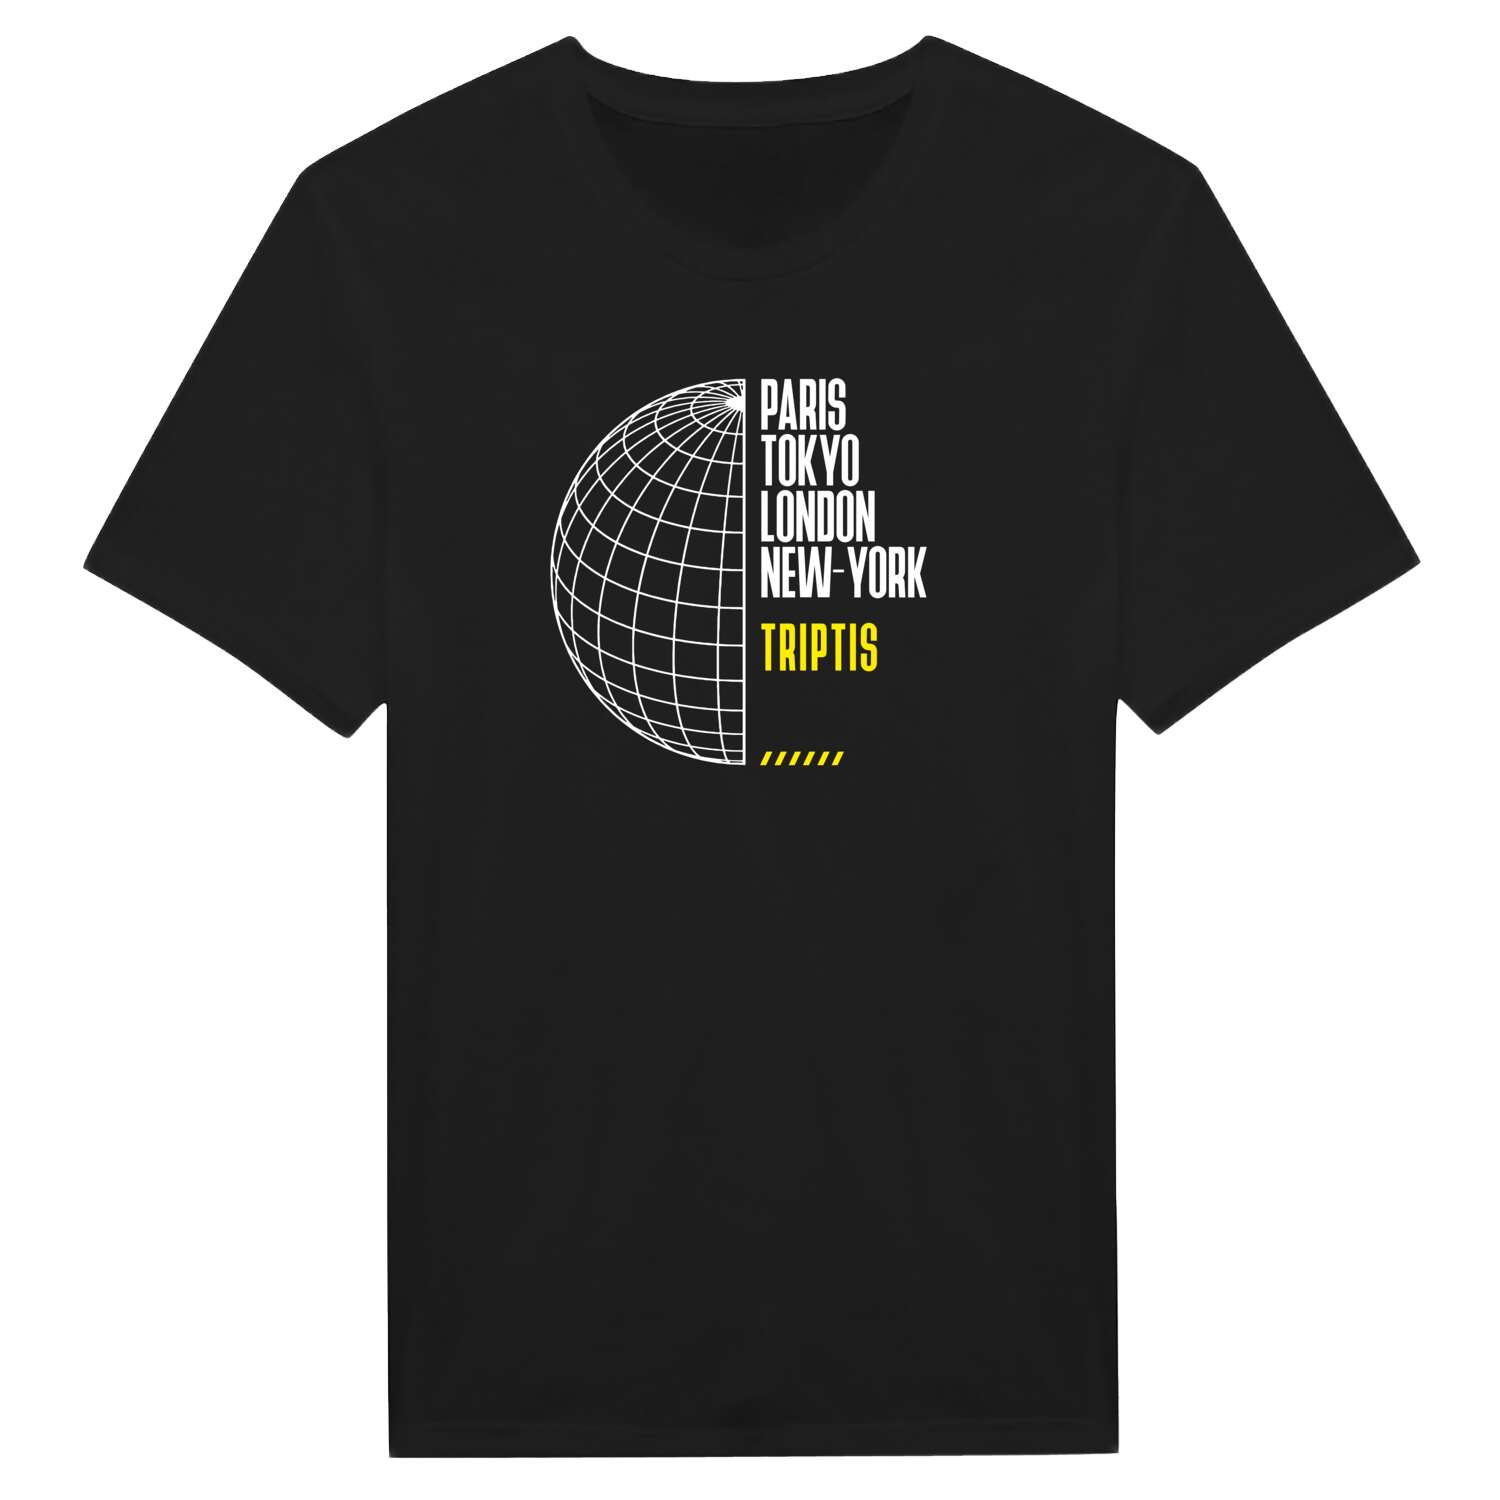 Triptis T-Shirt »Paris Tokyo London«